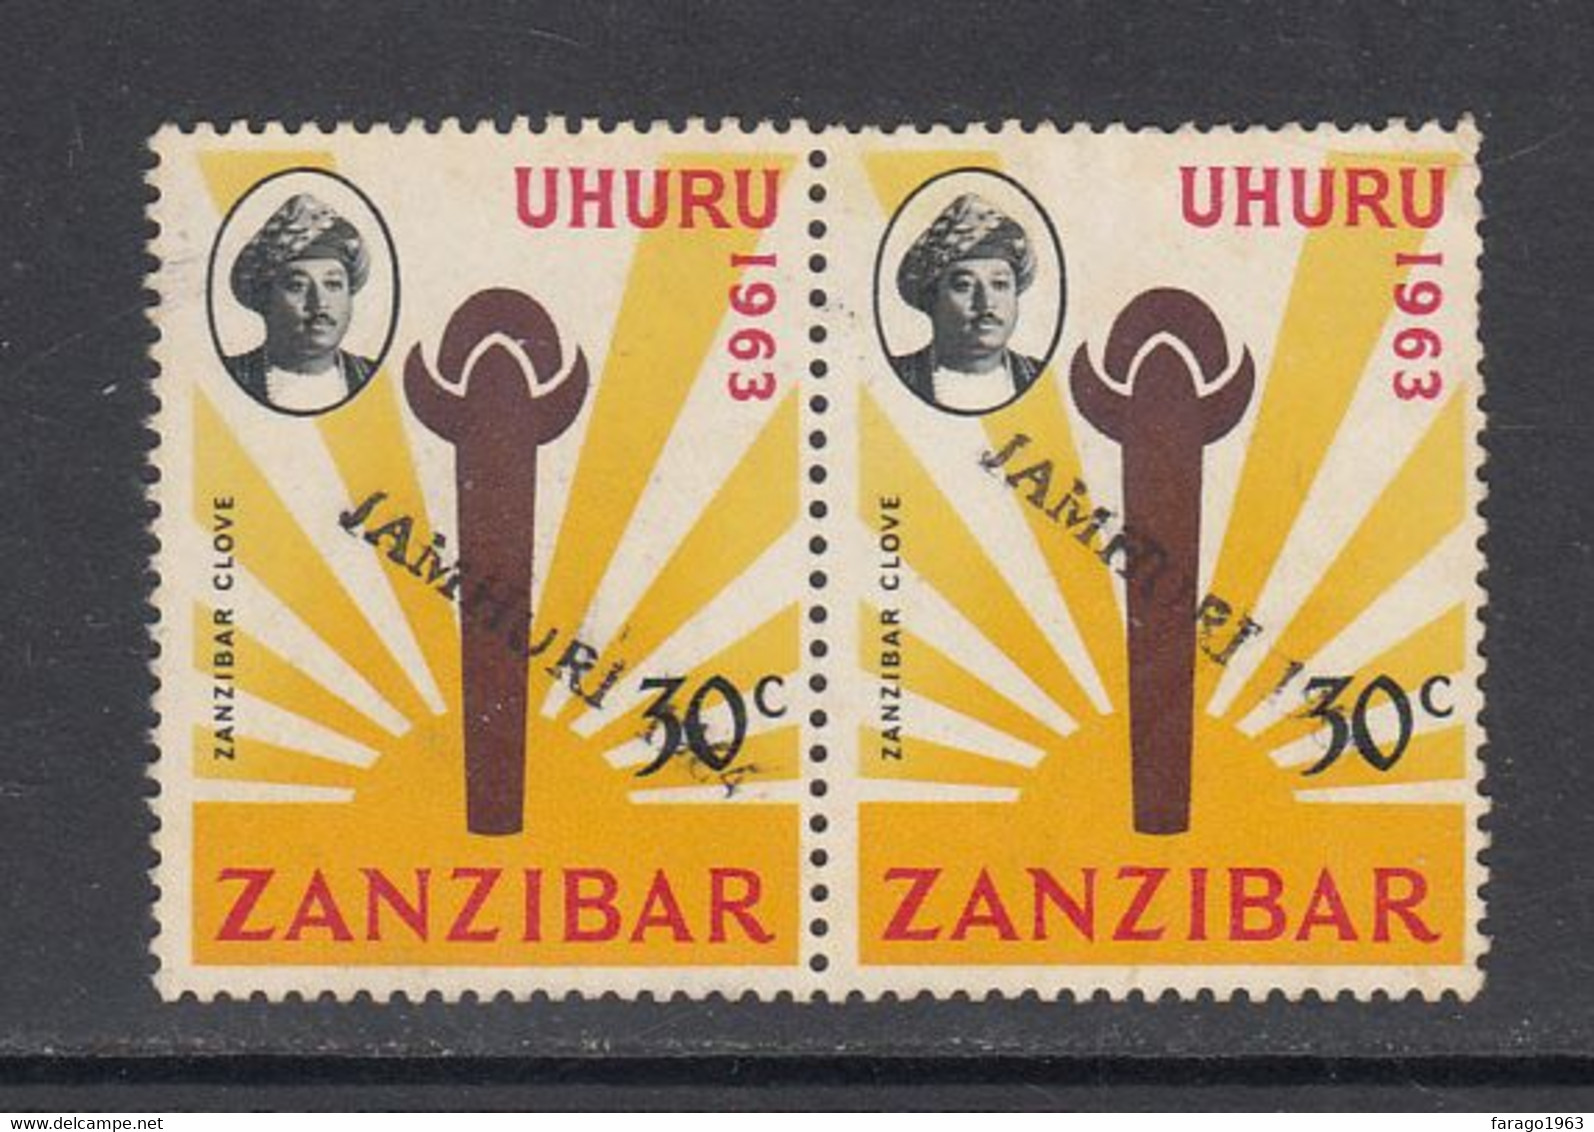 1964 Zanzibar 30c UHURU Local JAMHURI Overprint  SG410 Mint No Gum Pair (To Study Overprint Locations) - Zanzibar (1963-1968)